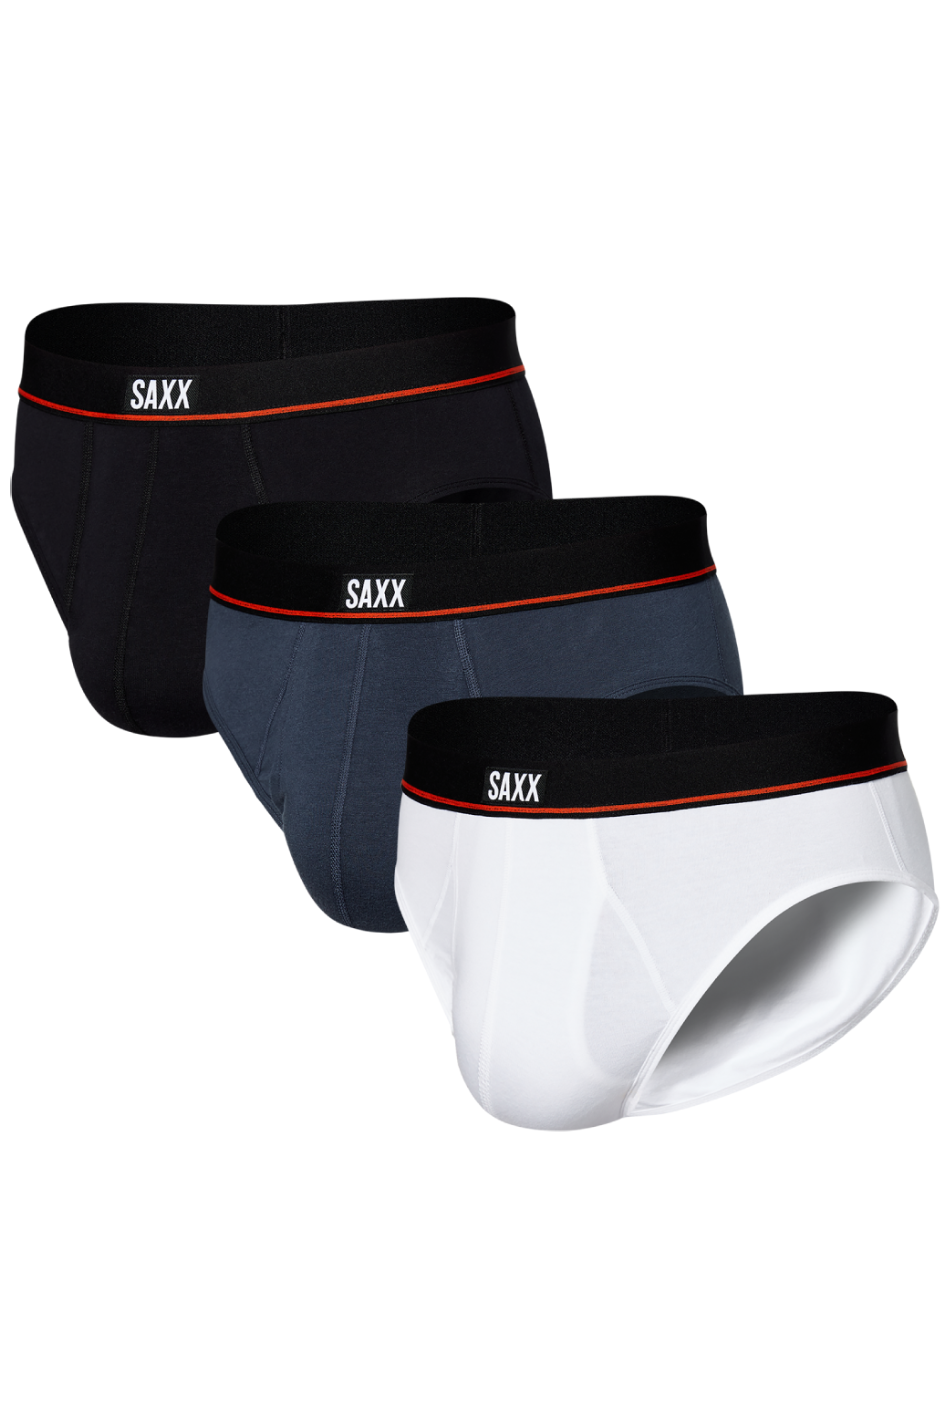 SAXX 3 Pack Men's Non-Stop Stretch Cotton Brief